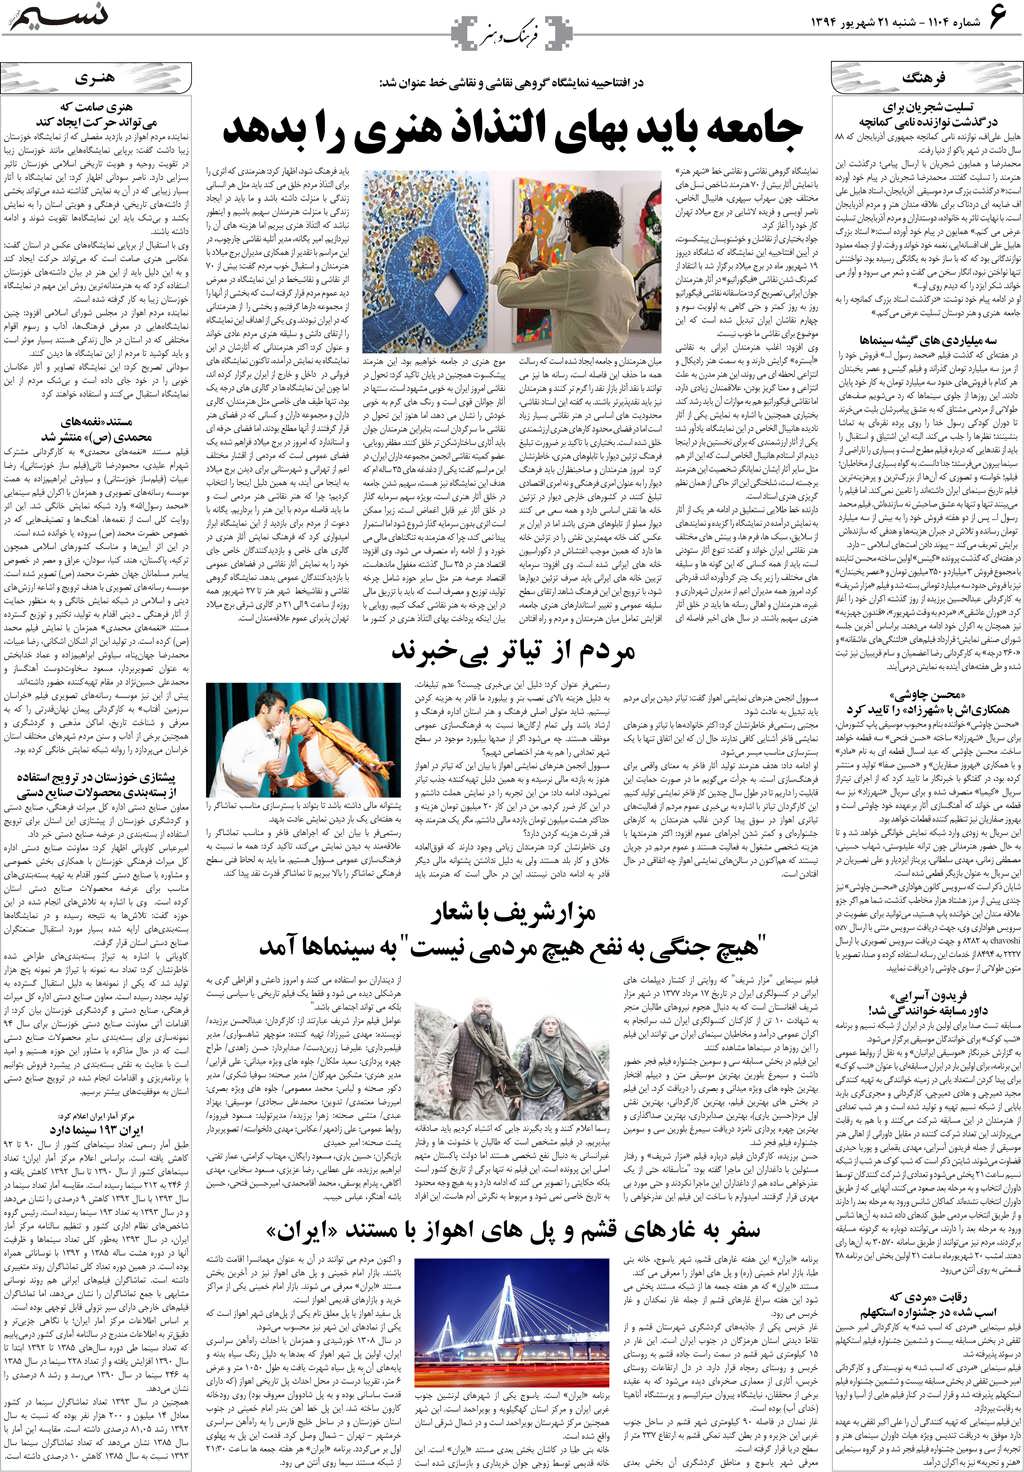 صفحه فرهنگ و هنر روزنامه نسیم شماره 1104